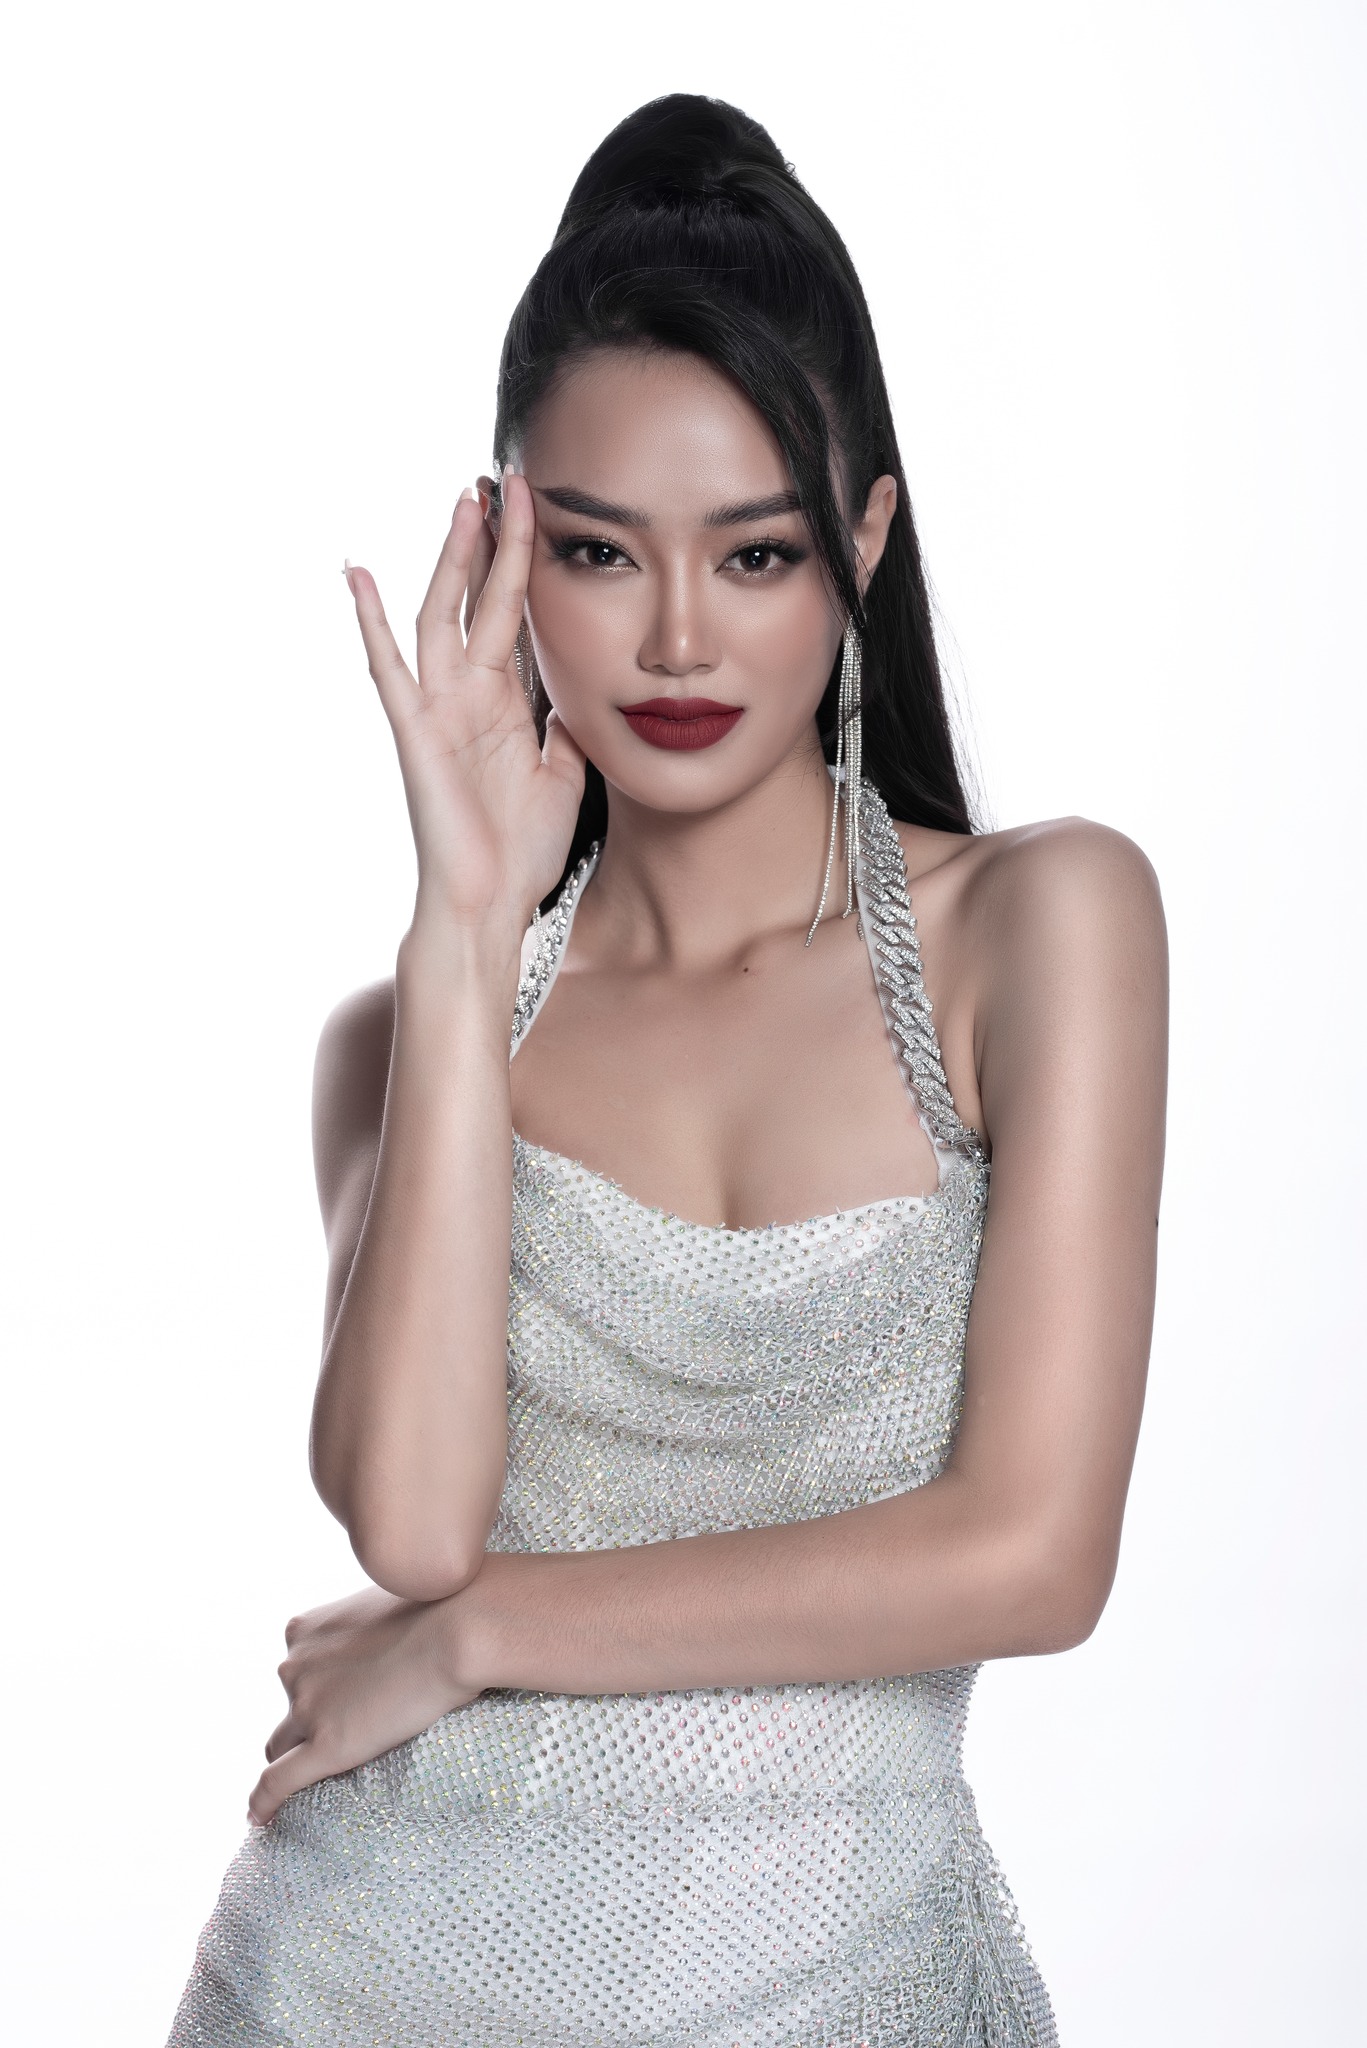 Nhan sắc xinh đẹp, quyến rũ của nữ thủ môn cao 1,76 m vào chung khảo Miss World Vietnam 2023 - Ảnh 11.